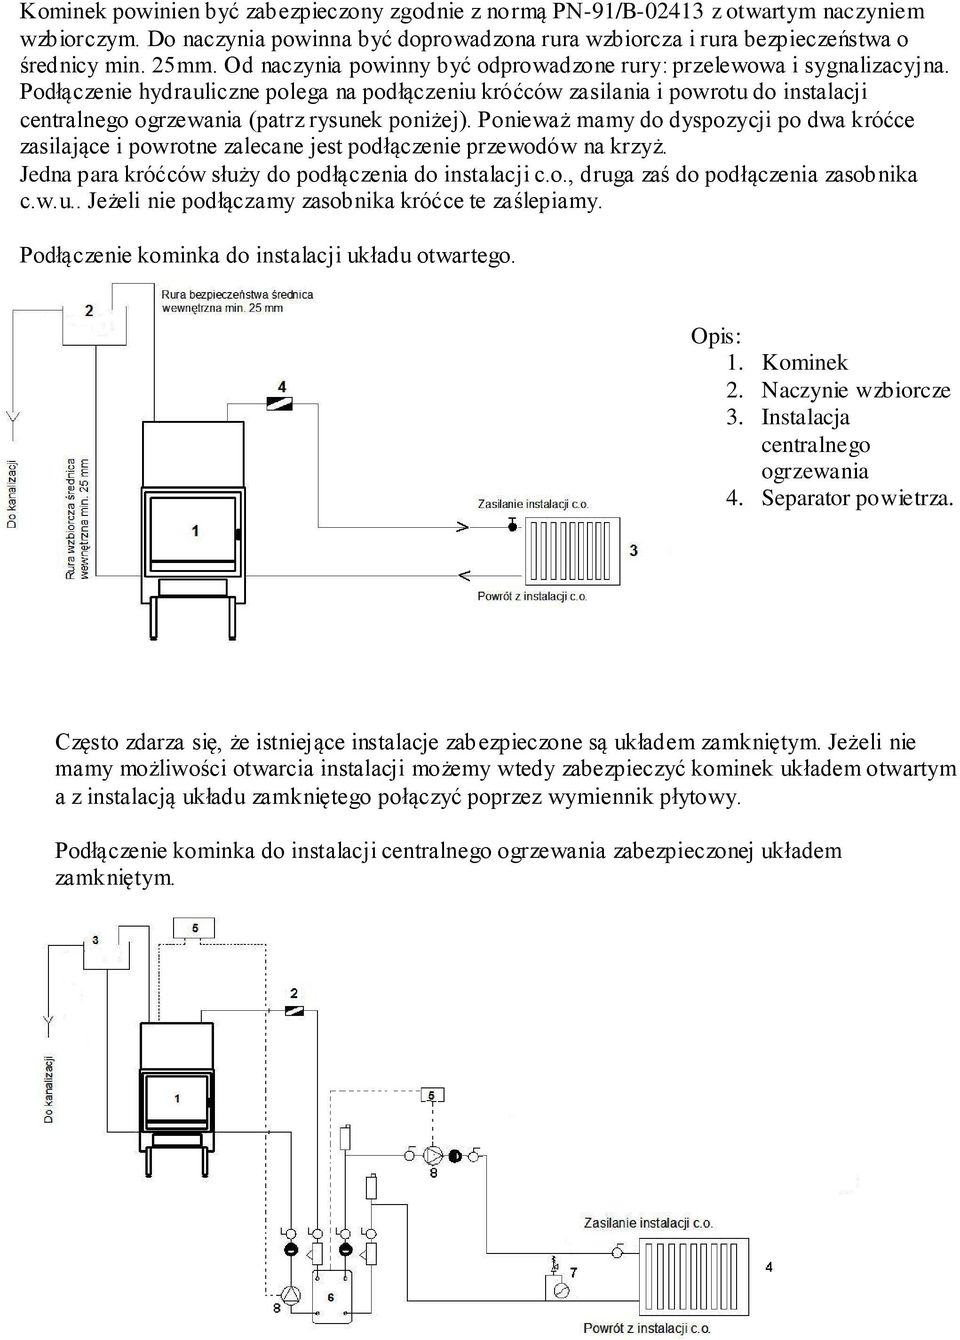 Podłączenie hydrauliczne polega na podłączeniu króćców zasilania i powrotu do instalacji centralnego ogrzewania (patrz rysunek poniżej).